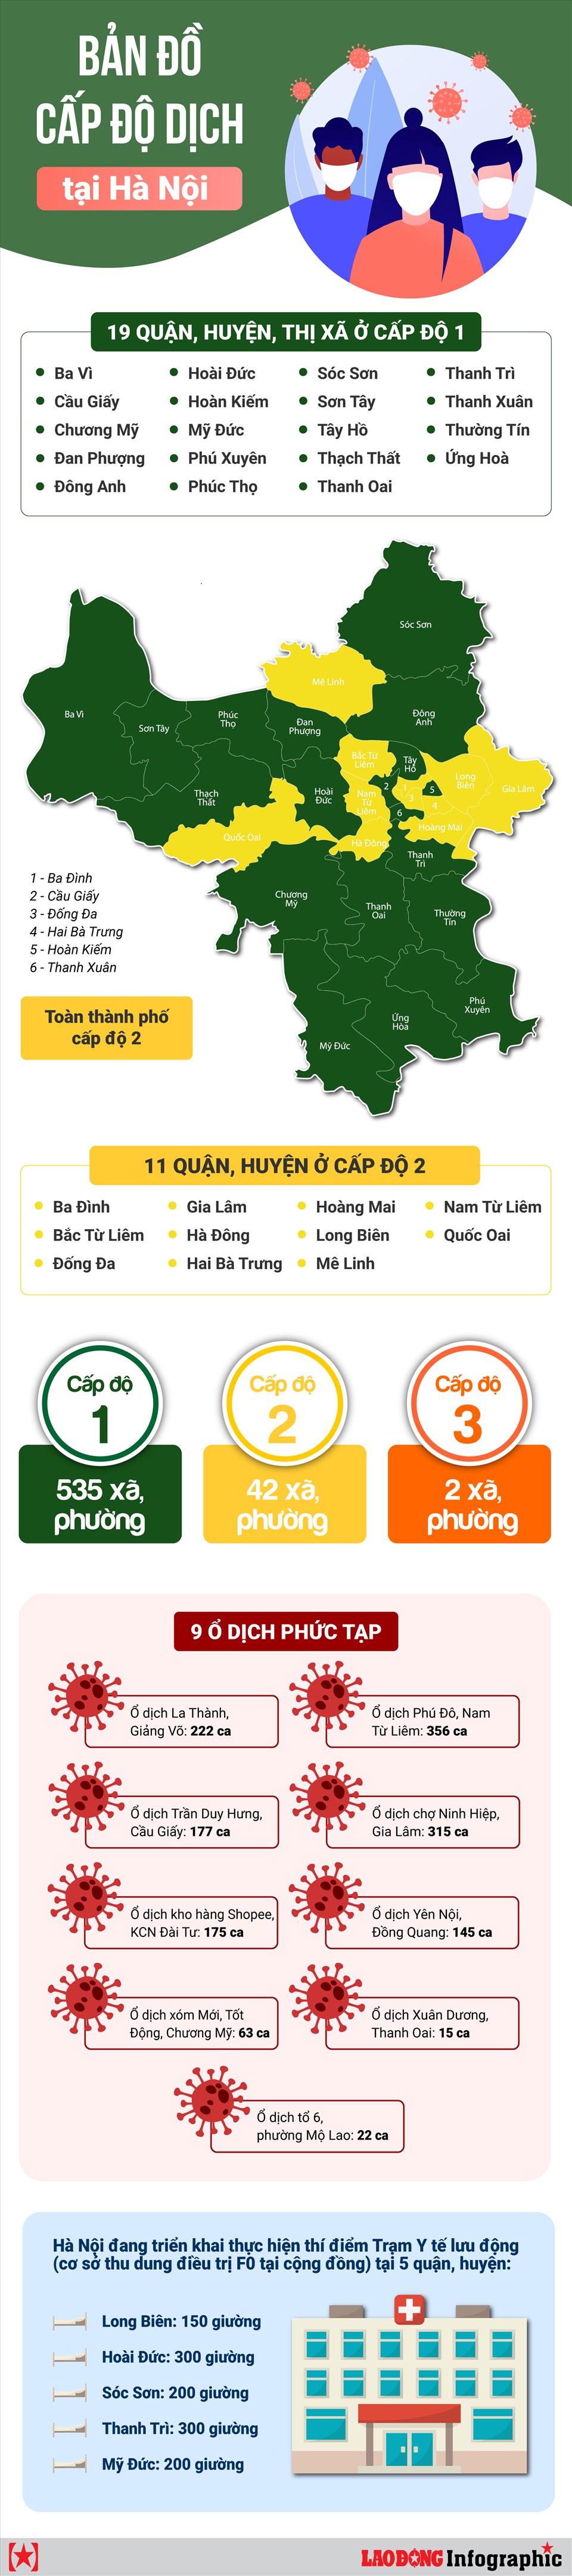 Bản đồ dịch Hà Nội và Phú Thọ năm 2024 sẽ cung cấp cho bạn thông tin về hai khu vực liên quan đến nhau. Điều này rất hữu ích cho những ai đang lưu thông giữa hai địa điểm này giúp họ cân nhắc các biện pháp phòng ngừa dịch bệnh đối với cả hai khu vực này.